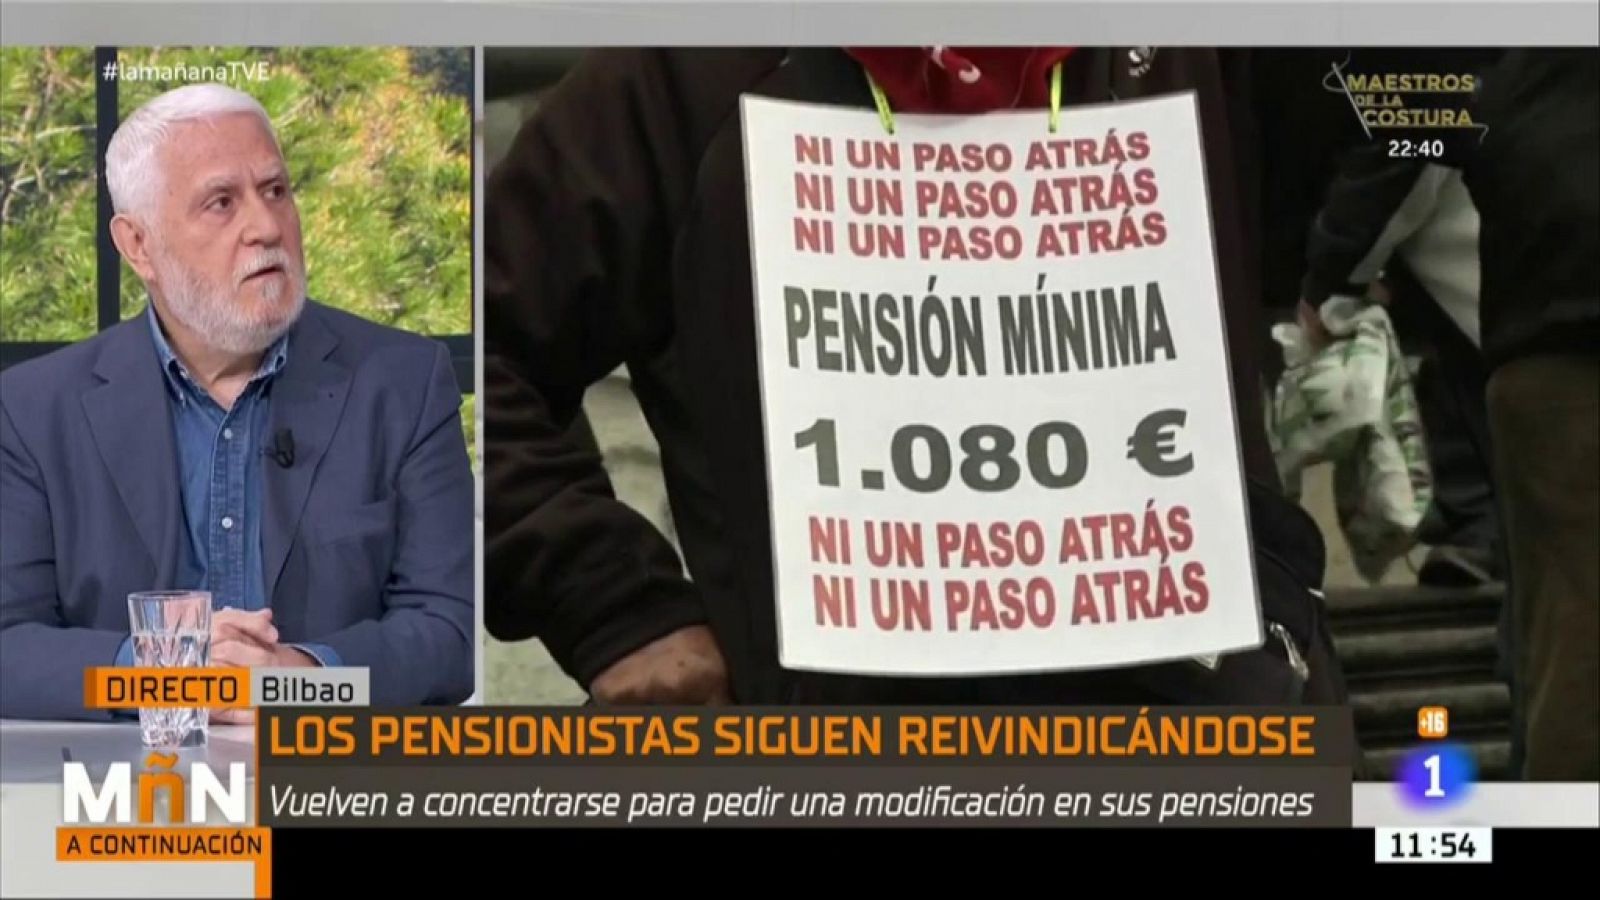 La Mañana - Manifestación de pensionistas en Bilbao: "Somos los pensionistas jubilados peor tratados"